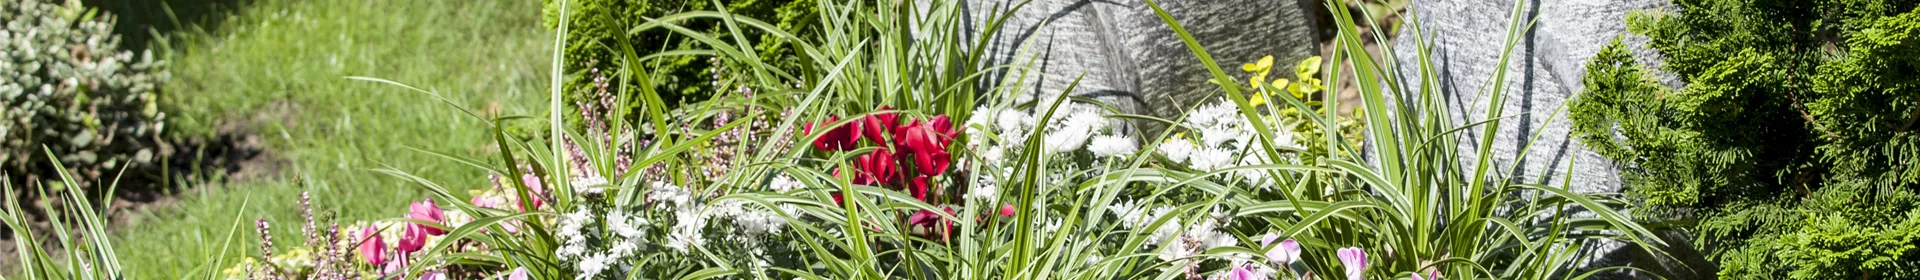 Im Mai bekommt das Grab seine Sommerbepflanzung - Rosengut Langerwisch